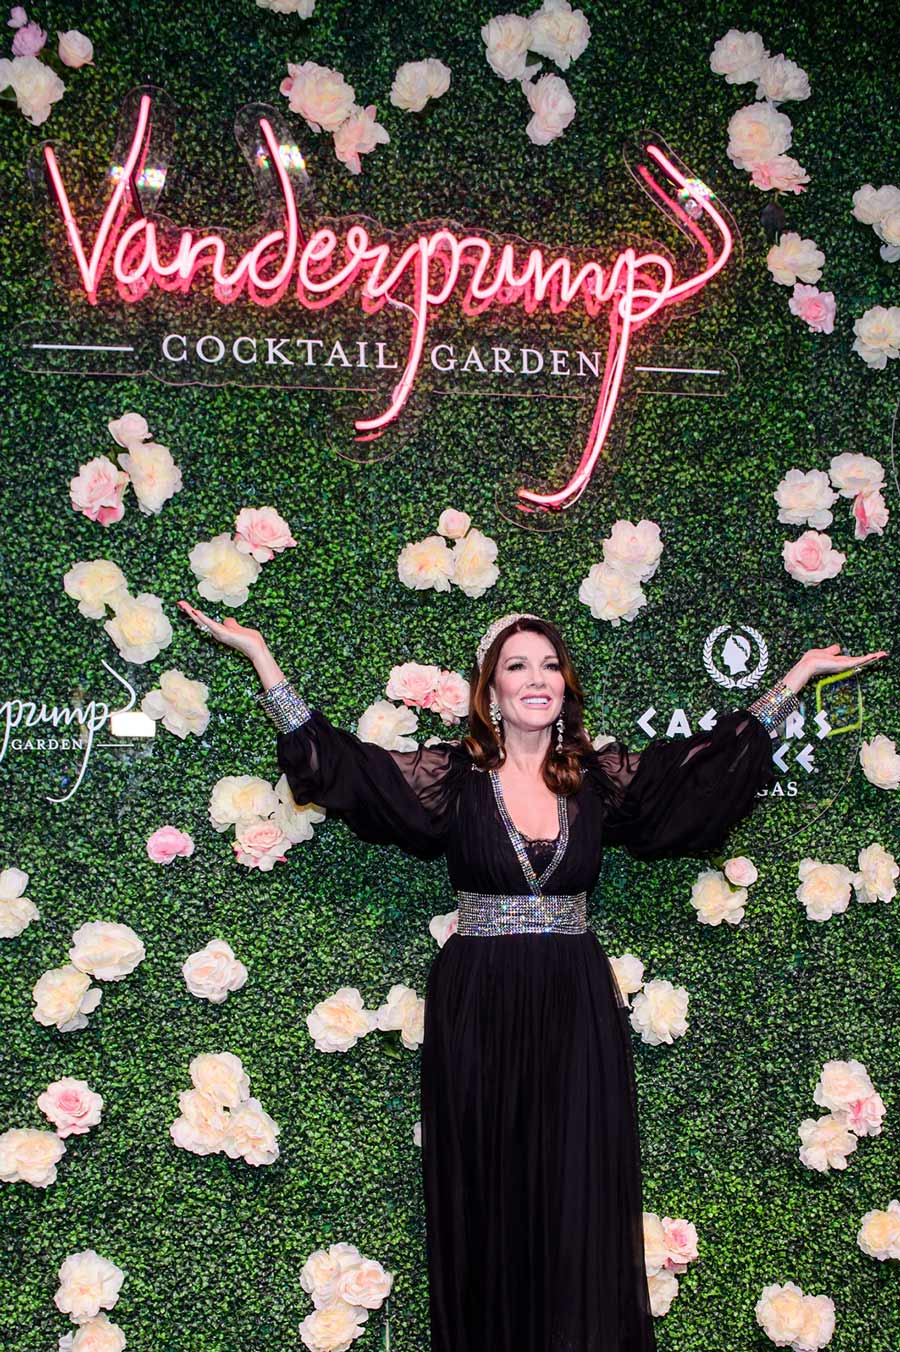 Lisa Vanderpump's Vanderpump à Paris Vegas Opening: Fashion